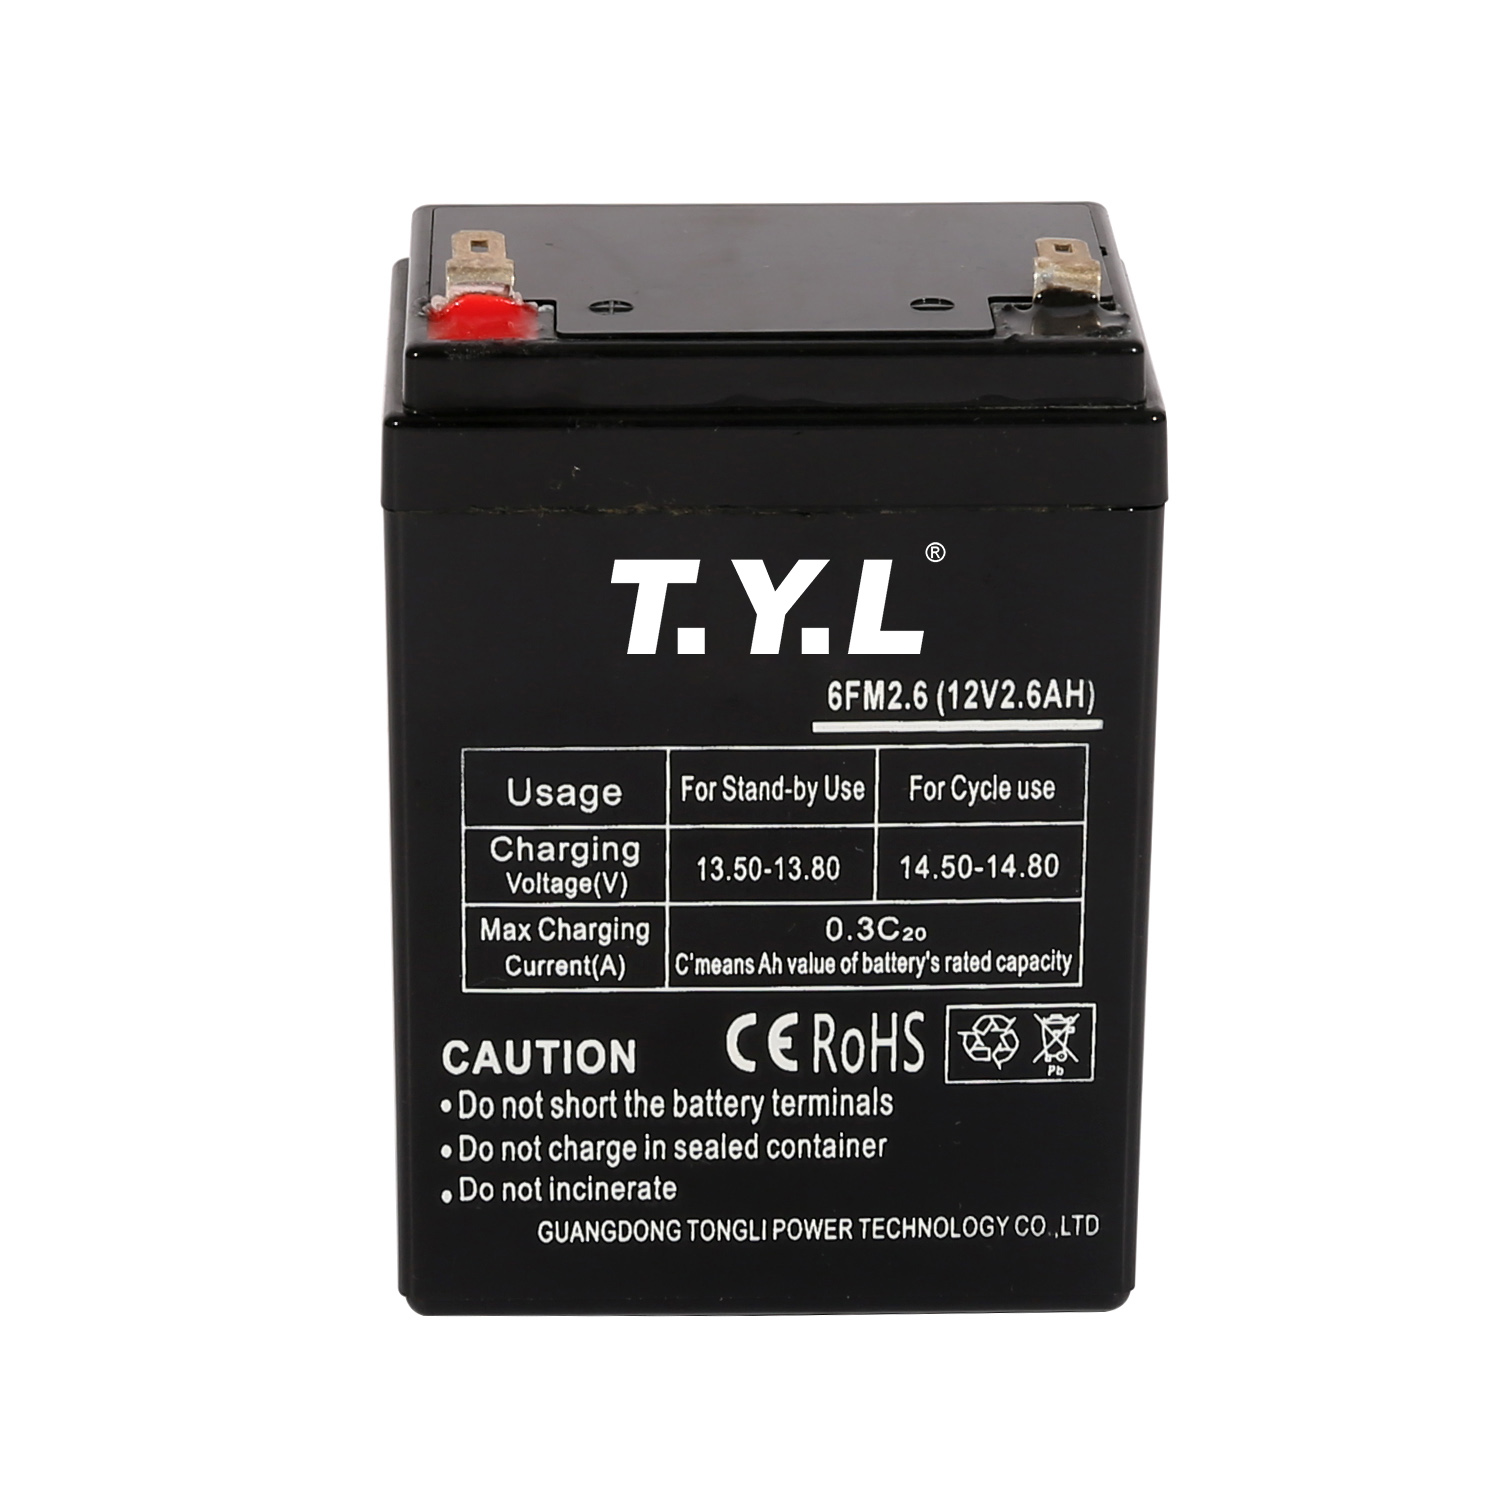 Batterie de stockage chimique en plastique 12V2.6AH pour les entreprises